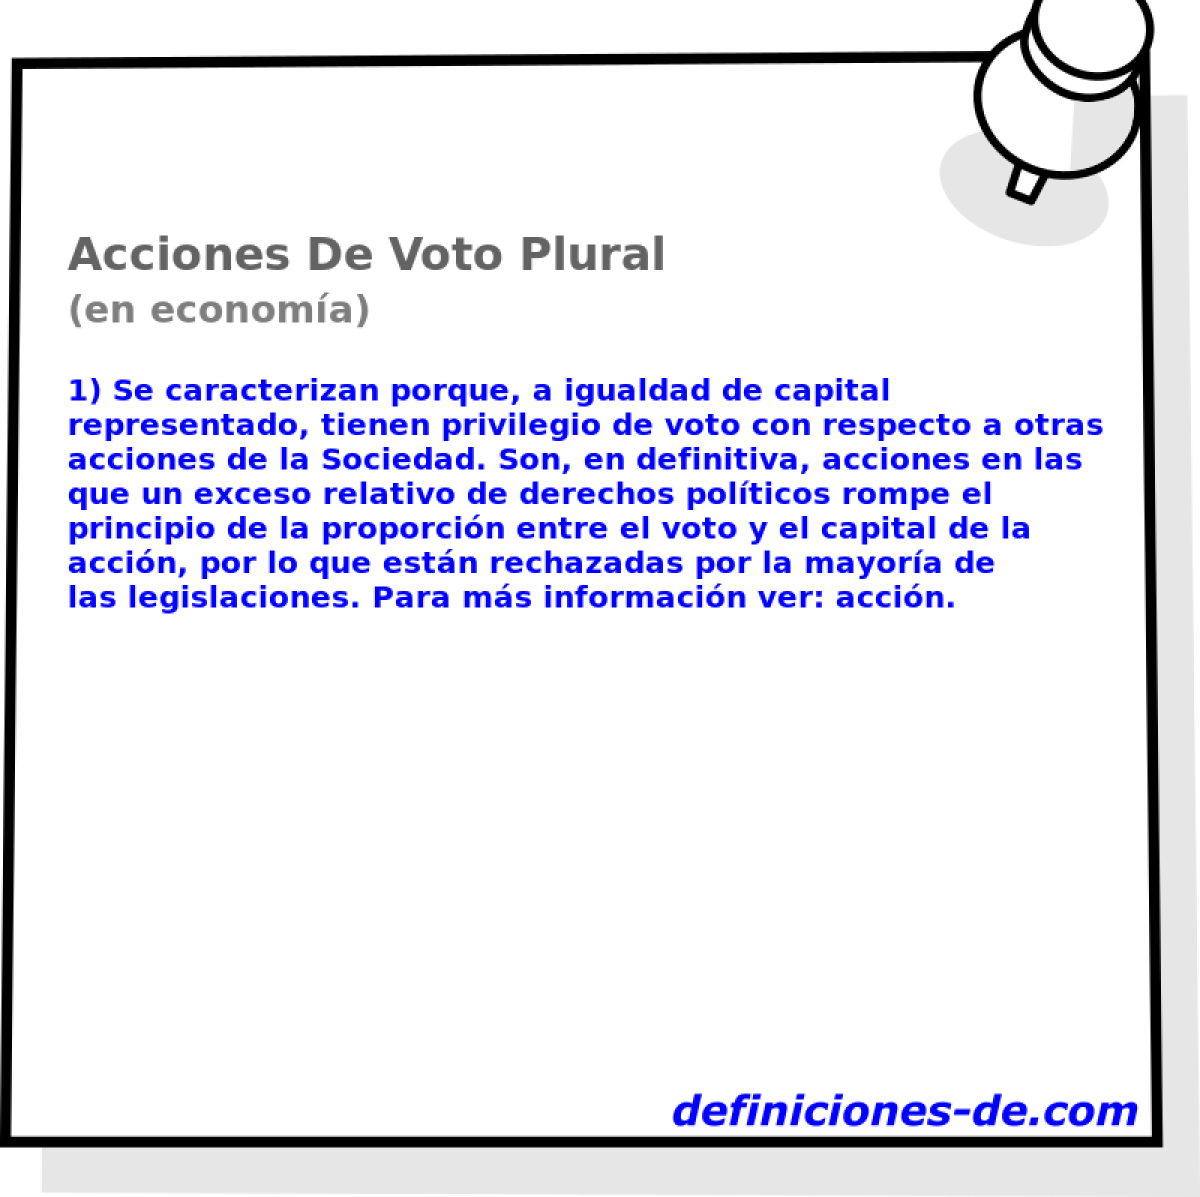 Acciones De Voto Plural (en economa)